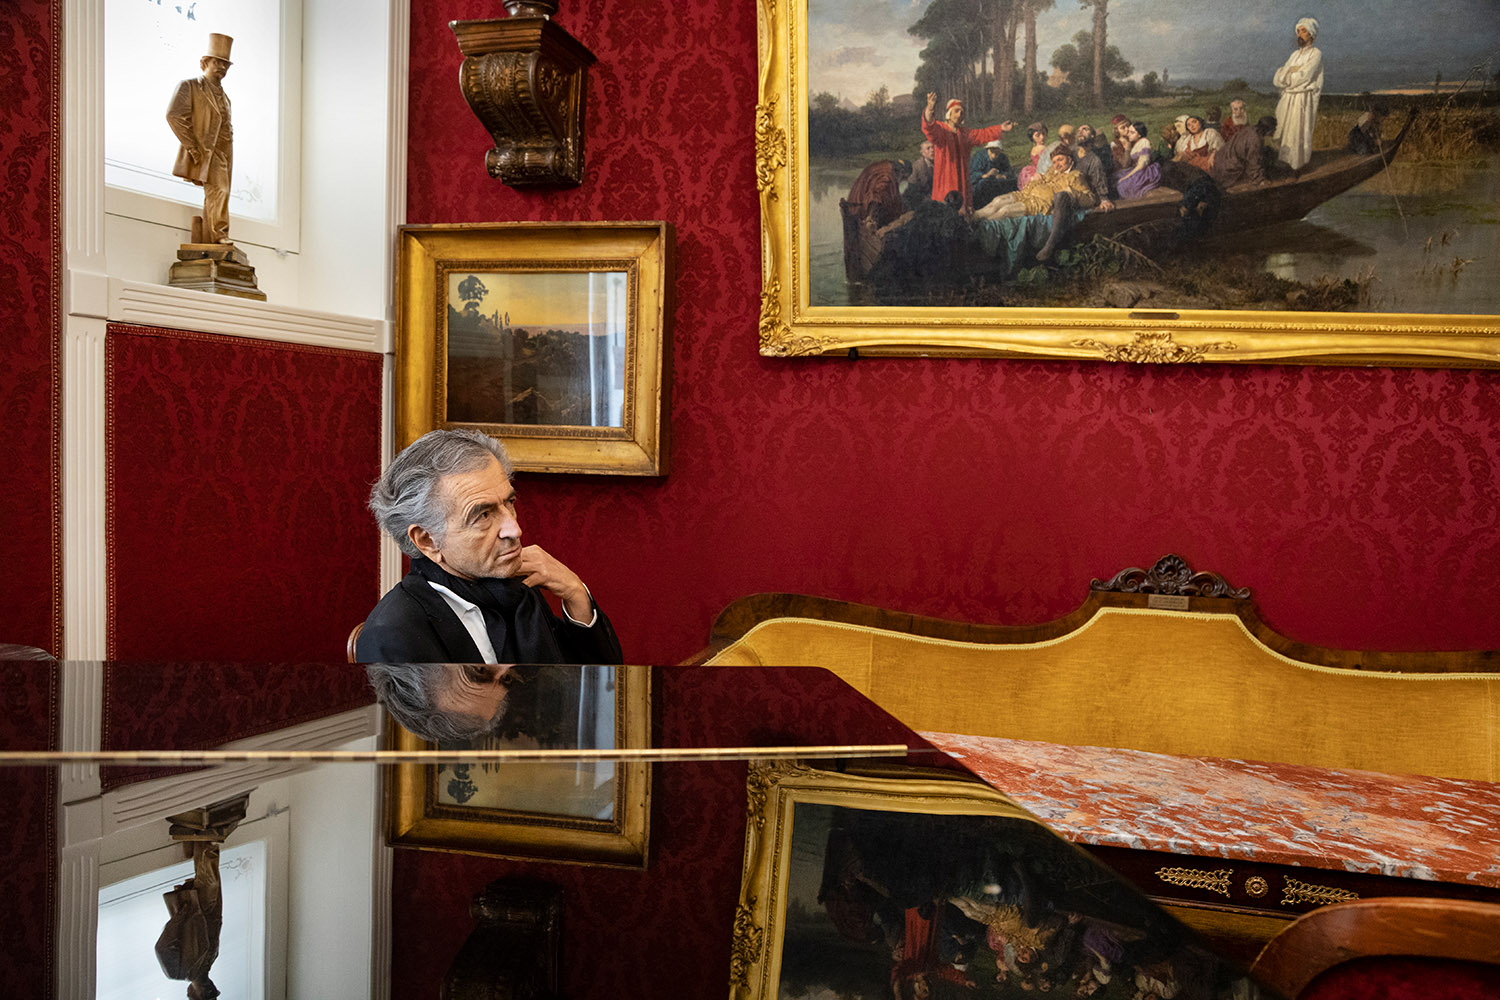 Bernard-Henri Lévy au café Greco de Rome. Le café est richement décoré par des tableaux.